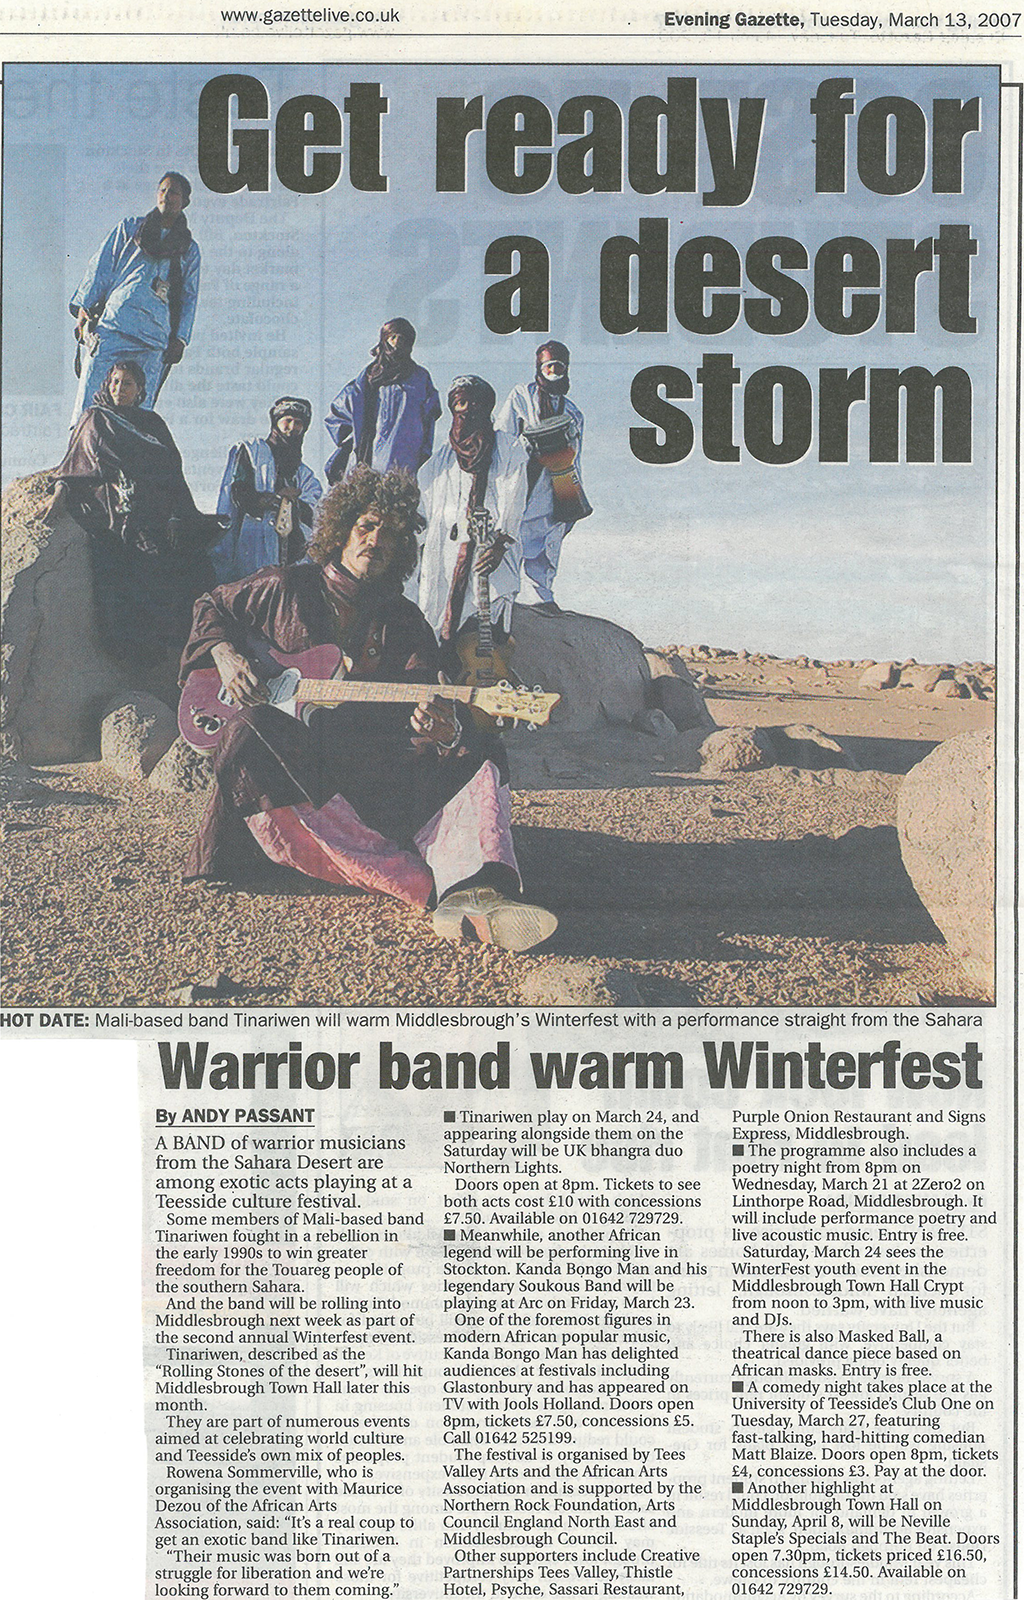 2007-03-13, Evening Gazette, Get ready for a desert storm Winterfest